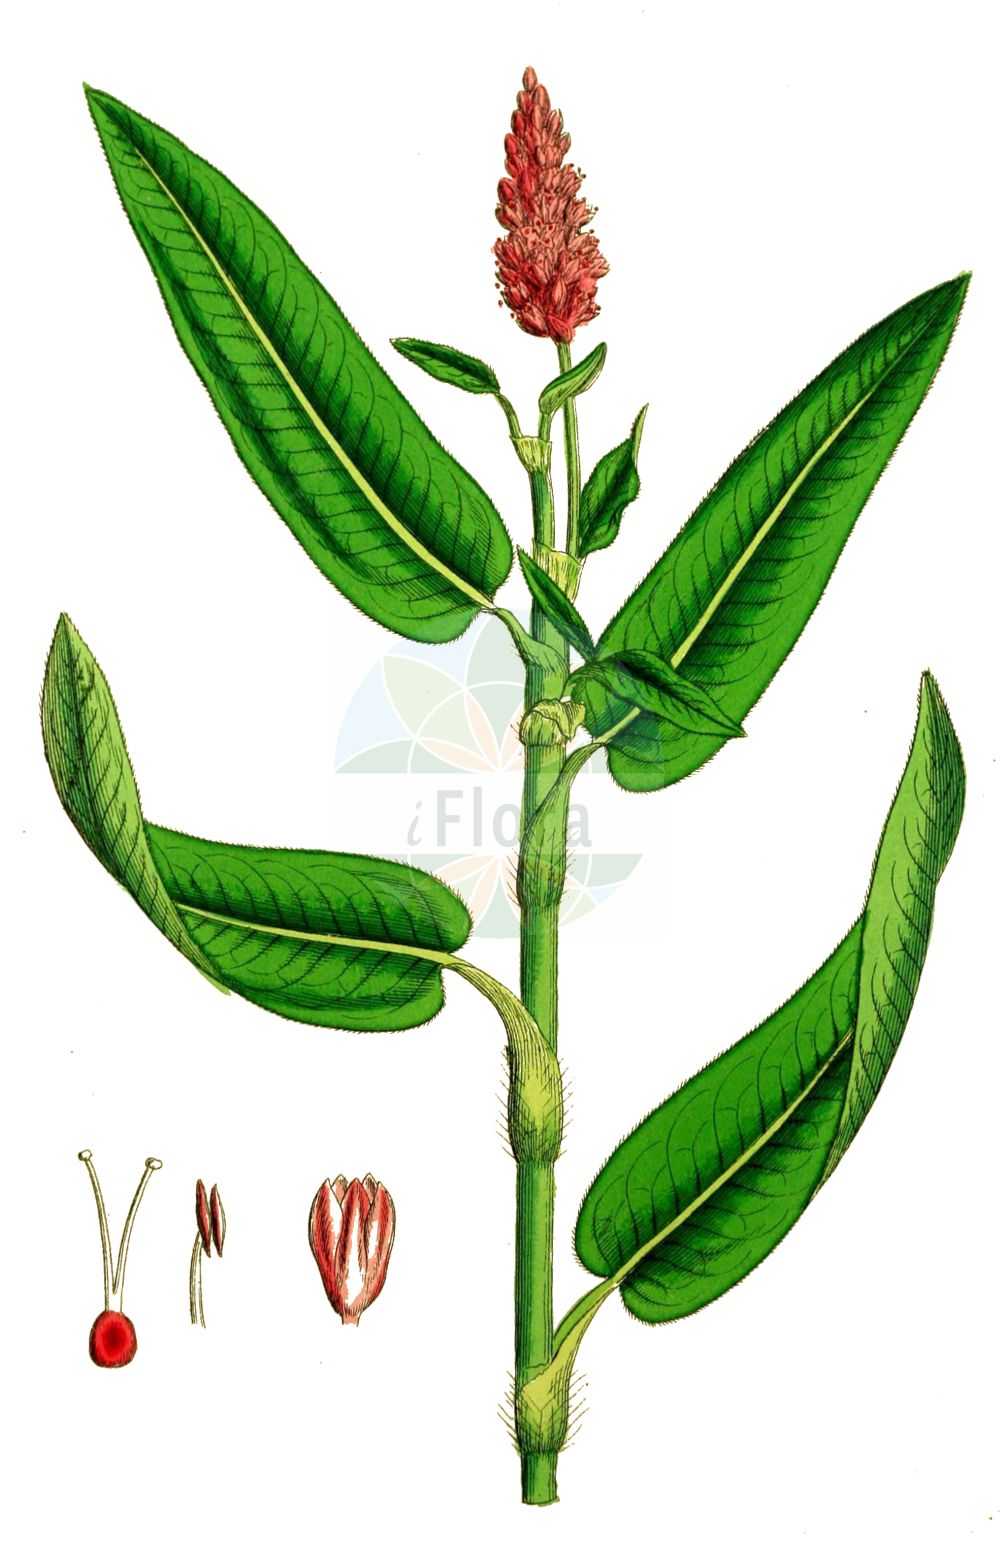 Historische Abbildung von Persicaria amphibia (Wasser-Knöterich - Amphibious Bistort). Das Bild zeigt Blatt, Bluete, Frucht und Same. ---- Historical Drawing of Persicaria amphibia (Wasser-Knöterich - Amphibious Bistort). The image is showing leaf, flower, fruit and seed.(Persicaria amphibia,Wasser-Knöterich,Amphibious Bistort,Persicaria amphibia,Polygonum amphibium,Polygonum amphibium var. terrestre,Wasser-Knoeterich,Amphibious Bistort,Water Knotweed,Devil's Shoestring,Perennial Knotgrass,Shoestringweed,Swamp Smartweed,Water Smartweed,Willow Grass,Persicaria,Knöterich,Knotgrass,Polygonaceae,Knöterichgewächse,Knotgrass family,Blatt,Bluete,Frucht,Same,leaf,flower,fruit,seed,Sowerby (1790-1813))